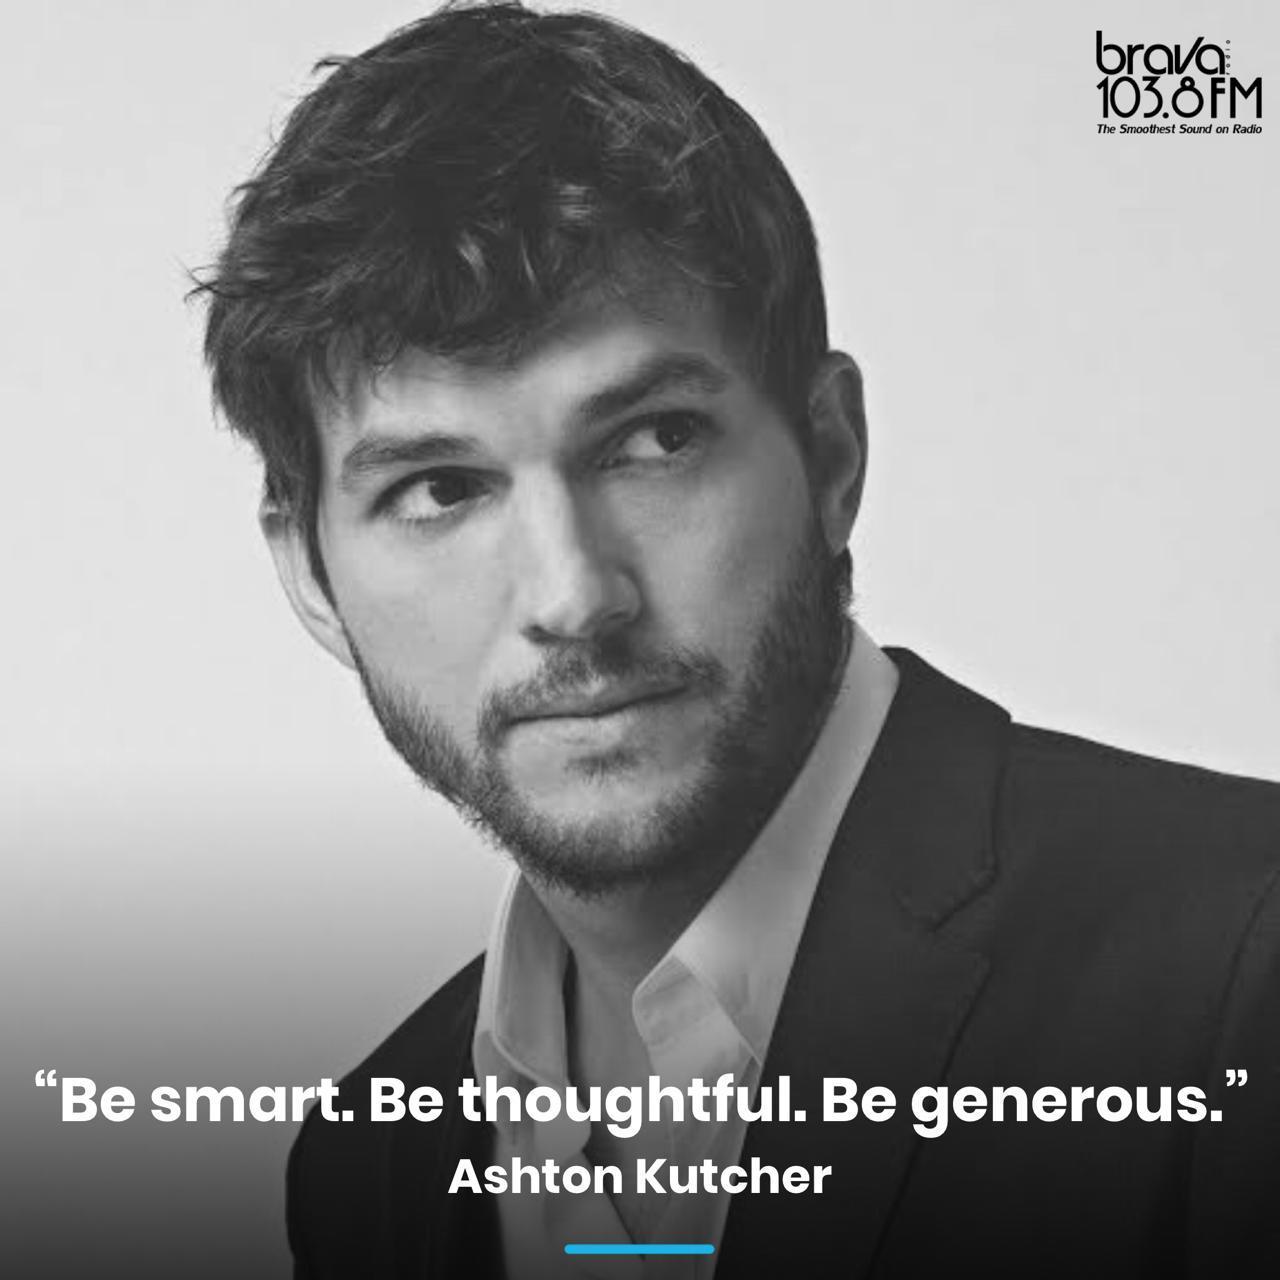 Happy birthday, Ashton Kutcher!  